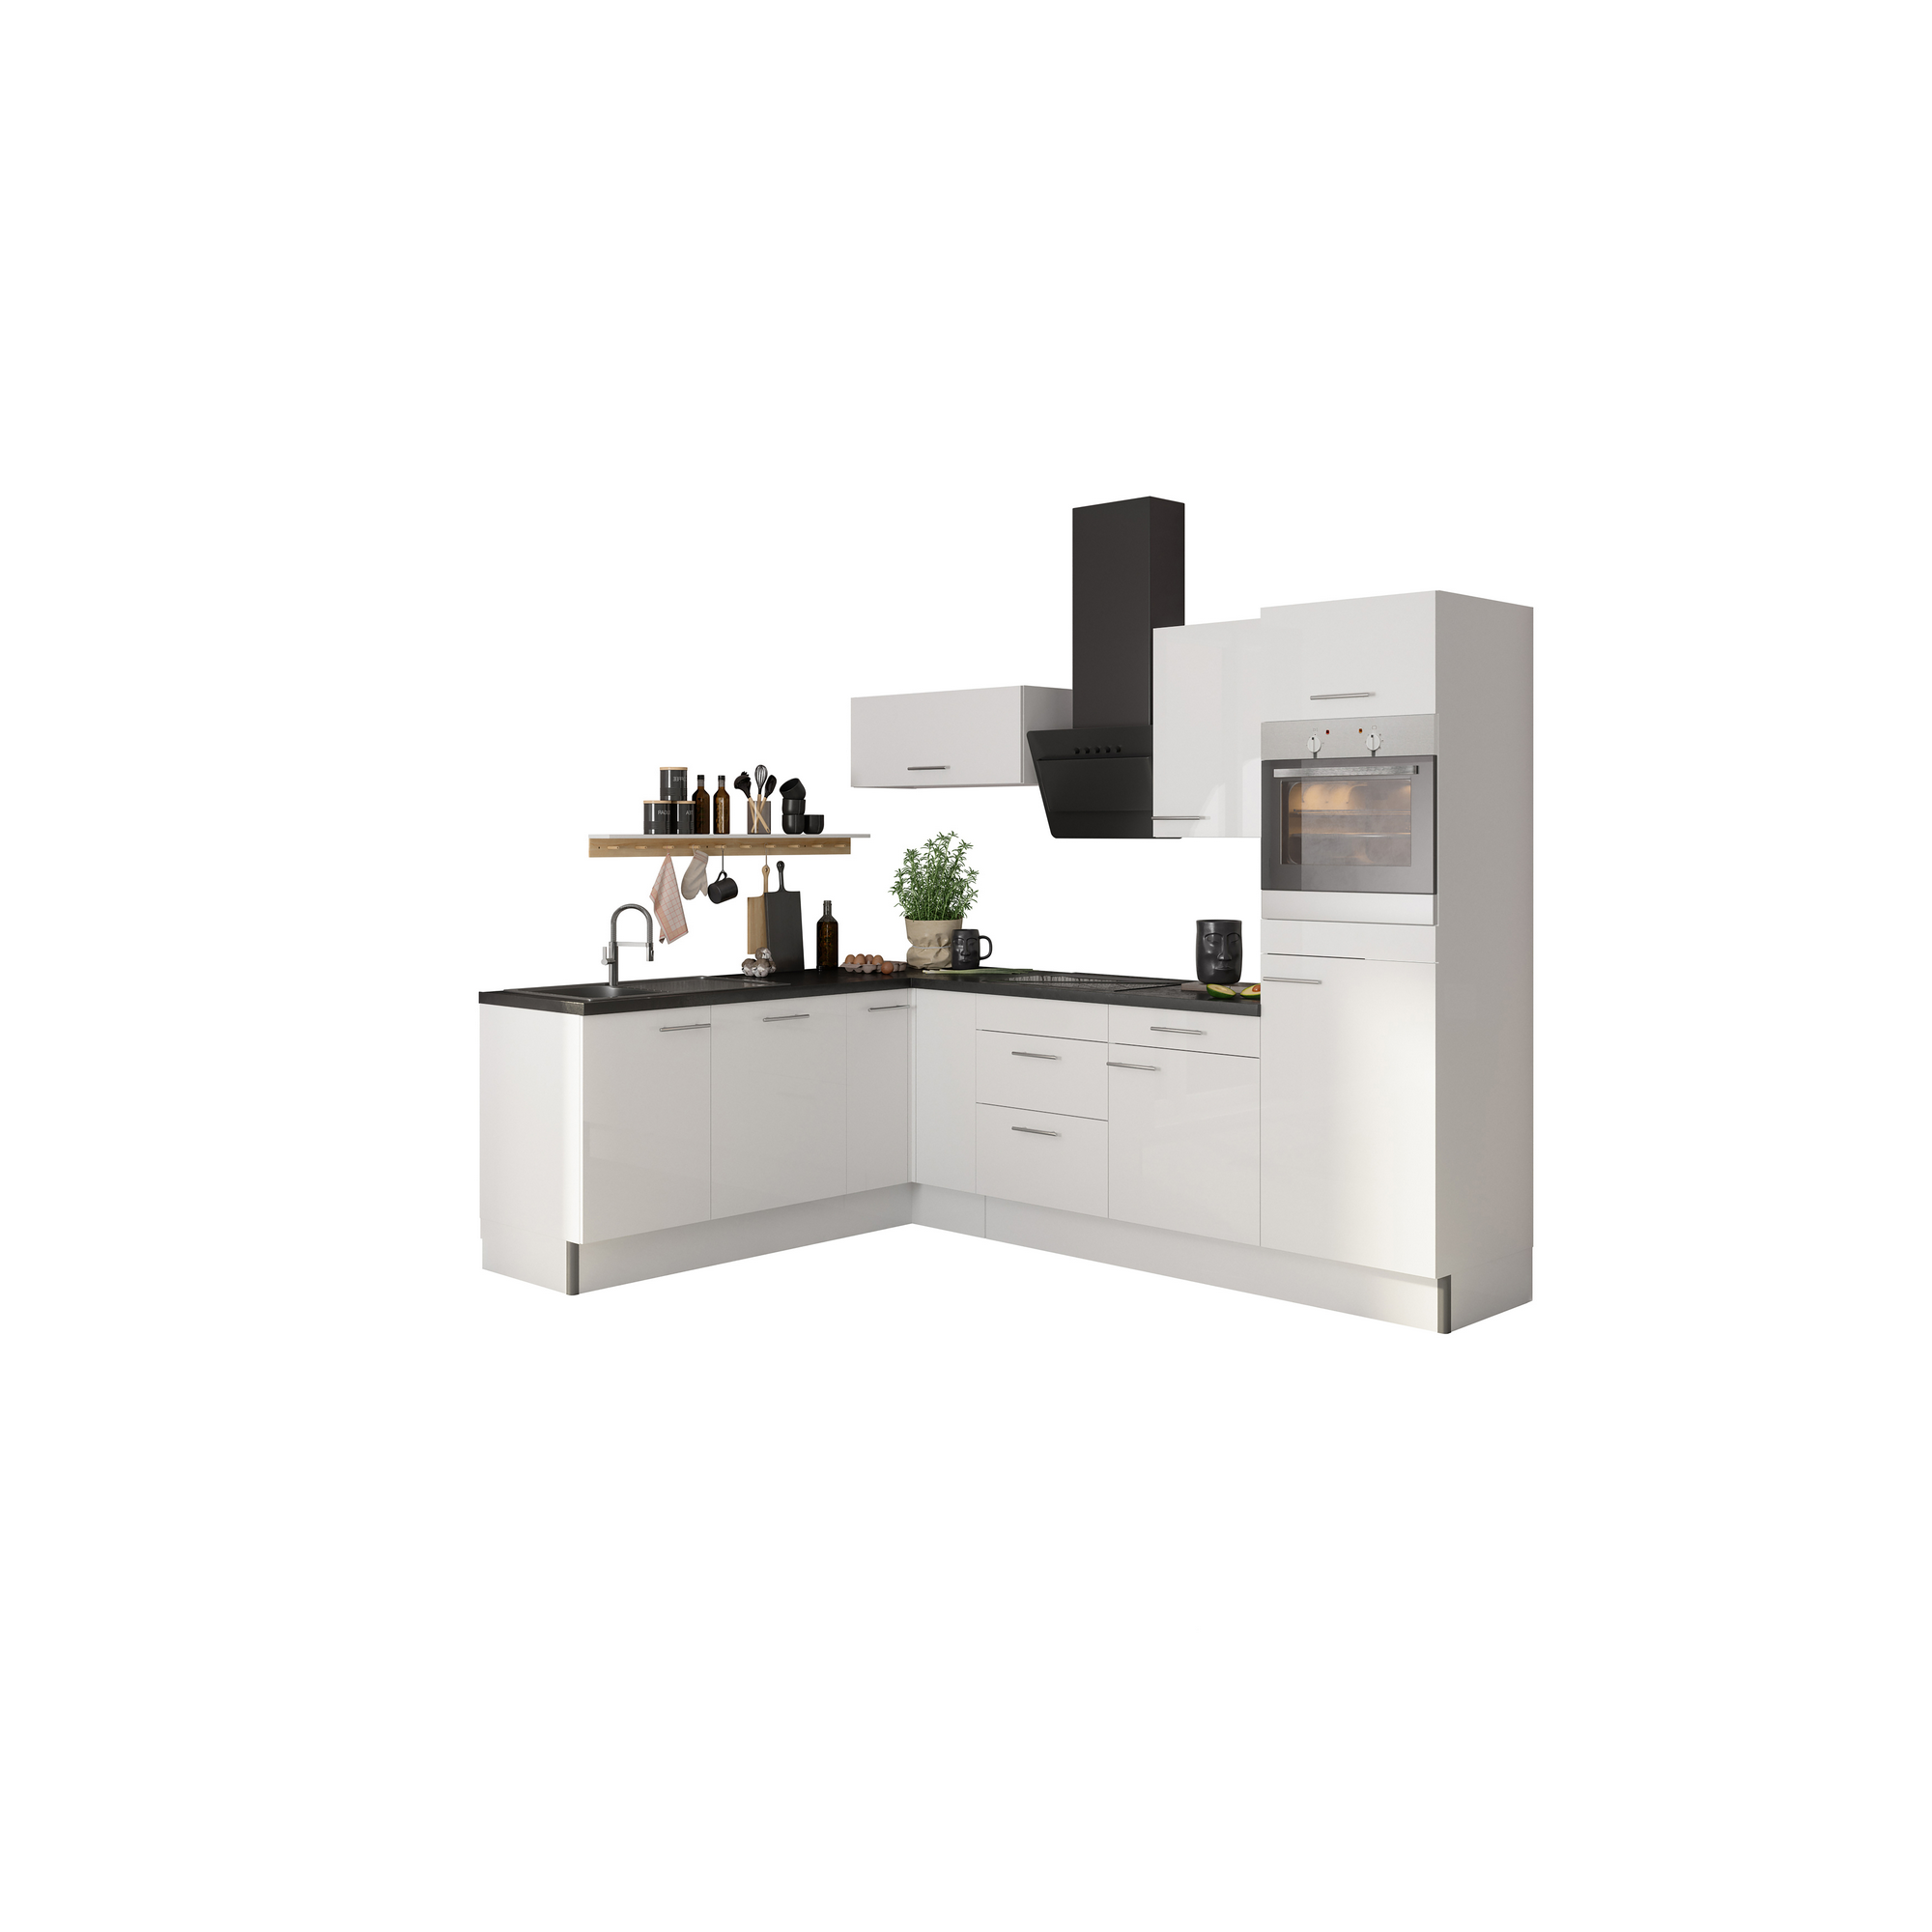 Winkelküche mit E-Geräten 'OPTIkoncept Rurik986' weiß 270 cm + product picture